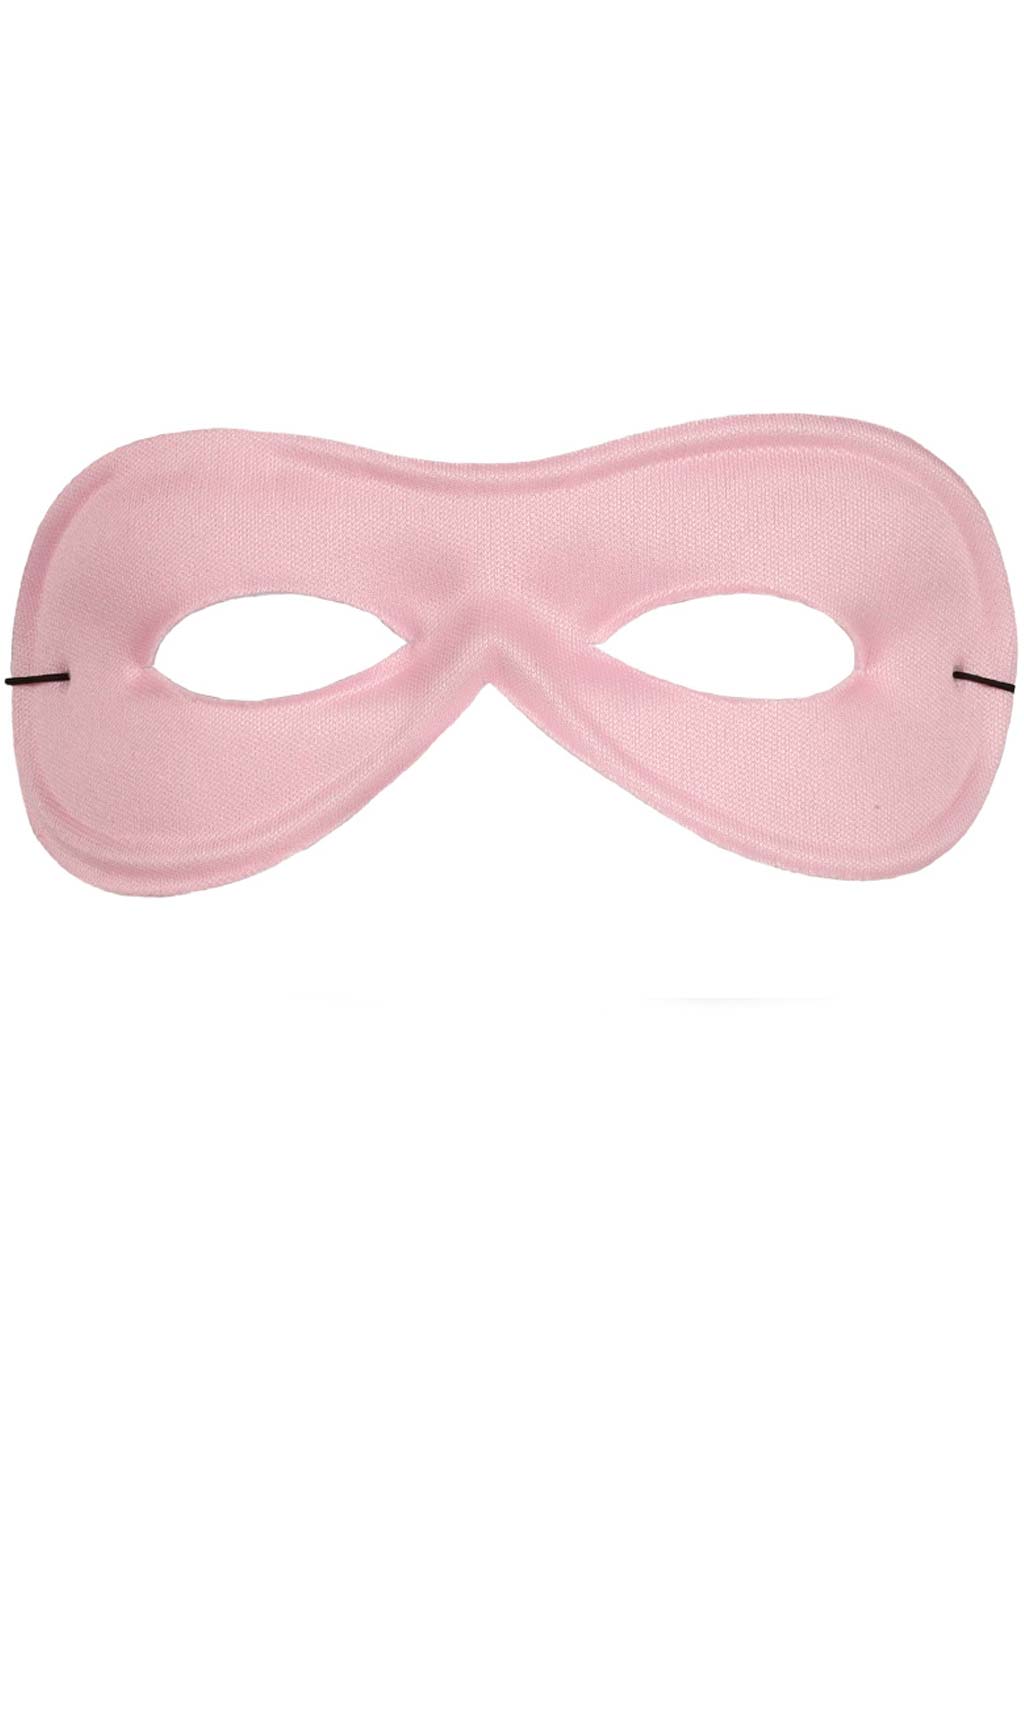 Augenmaske rosa Eco